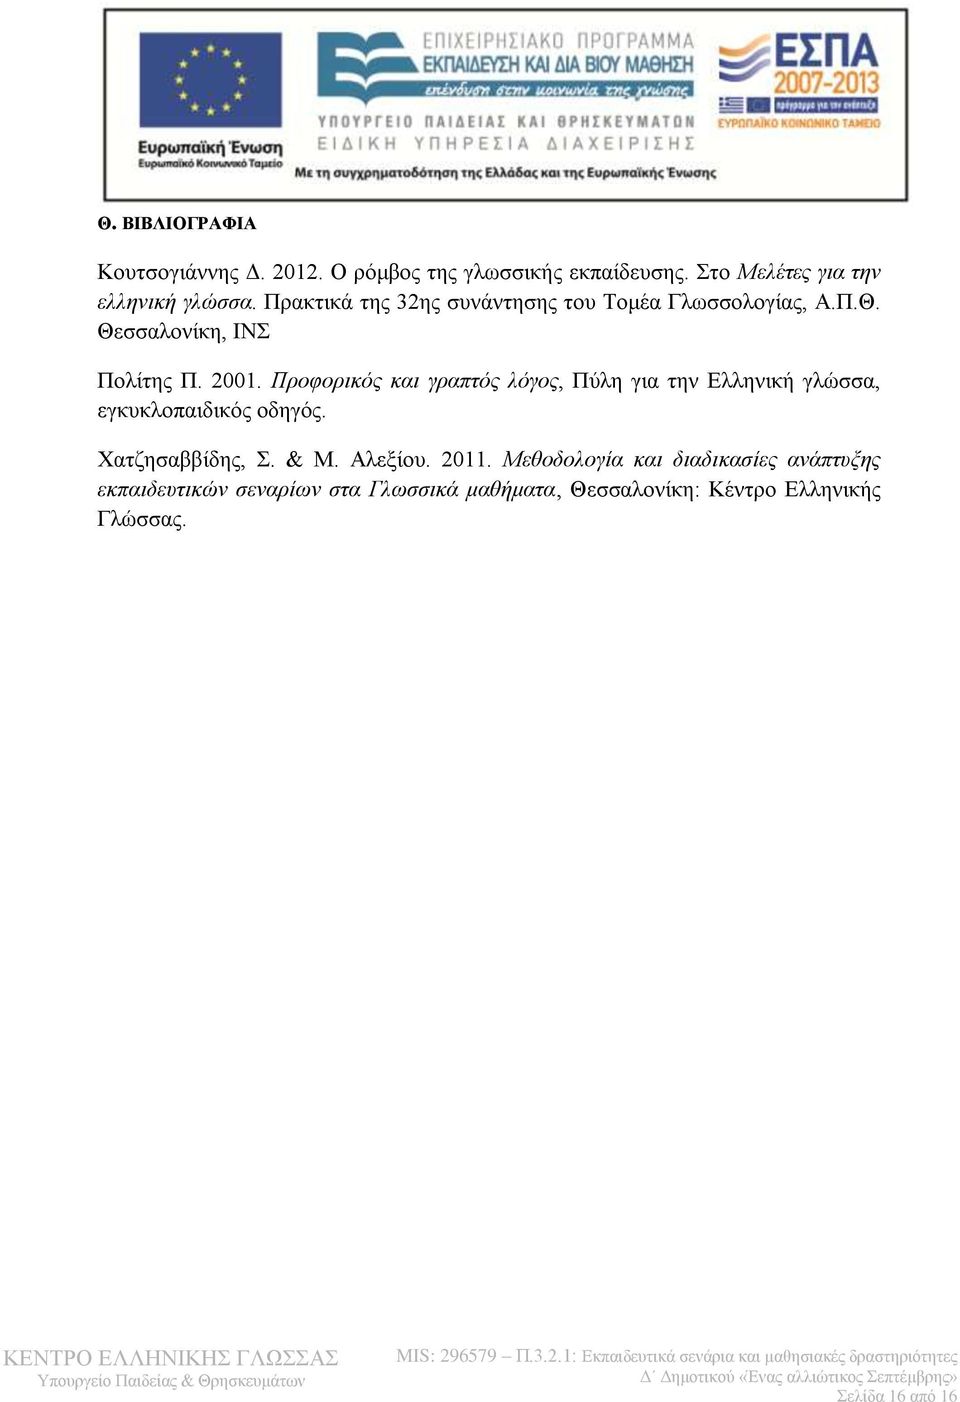 Προφορικός και γραπτός λόγος, Πύλη για την Ελληνική γλώσσα, εγκυκλοπαιδικός οδηγός. Χατζησαββίδης, Σ. & Μ. Αλεξίου.